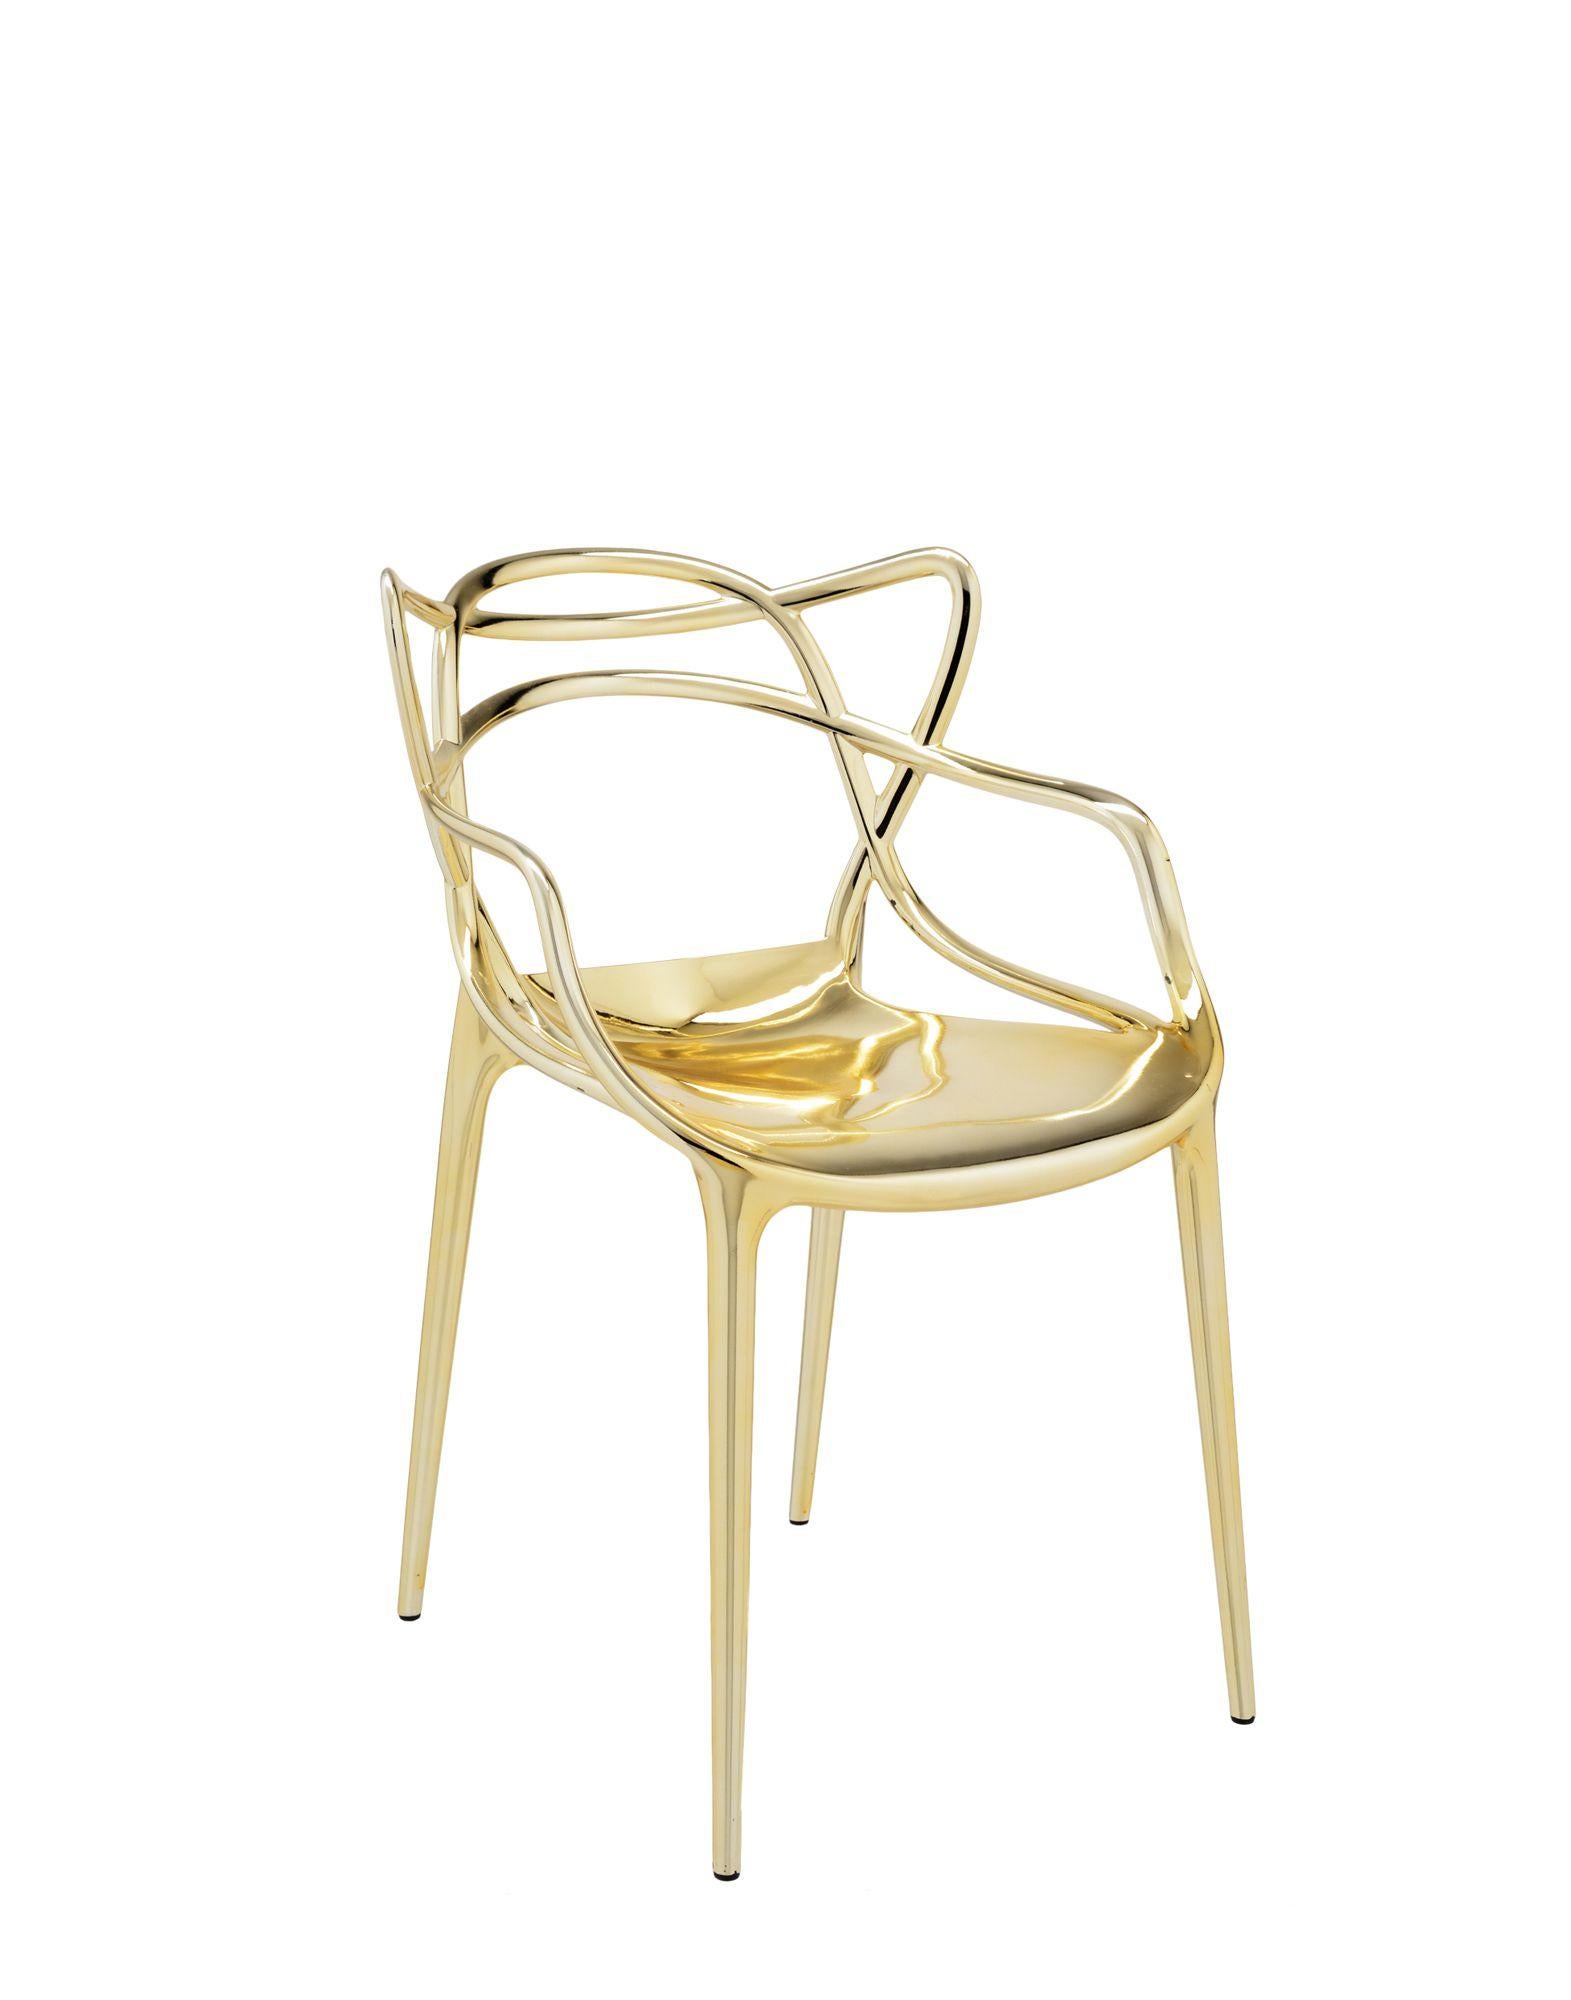 La chaise Masters est un hommage puissant à trois chaises symboliques, relues et réinterprétées par le génie créatif de Starck. Les silhouettes incomparables de la Série 7 d'Arne Jacobsen, du fauteuil Tulipe d'Eero Saarinen et de la chaise Eiffel de